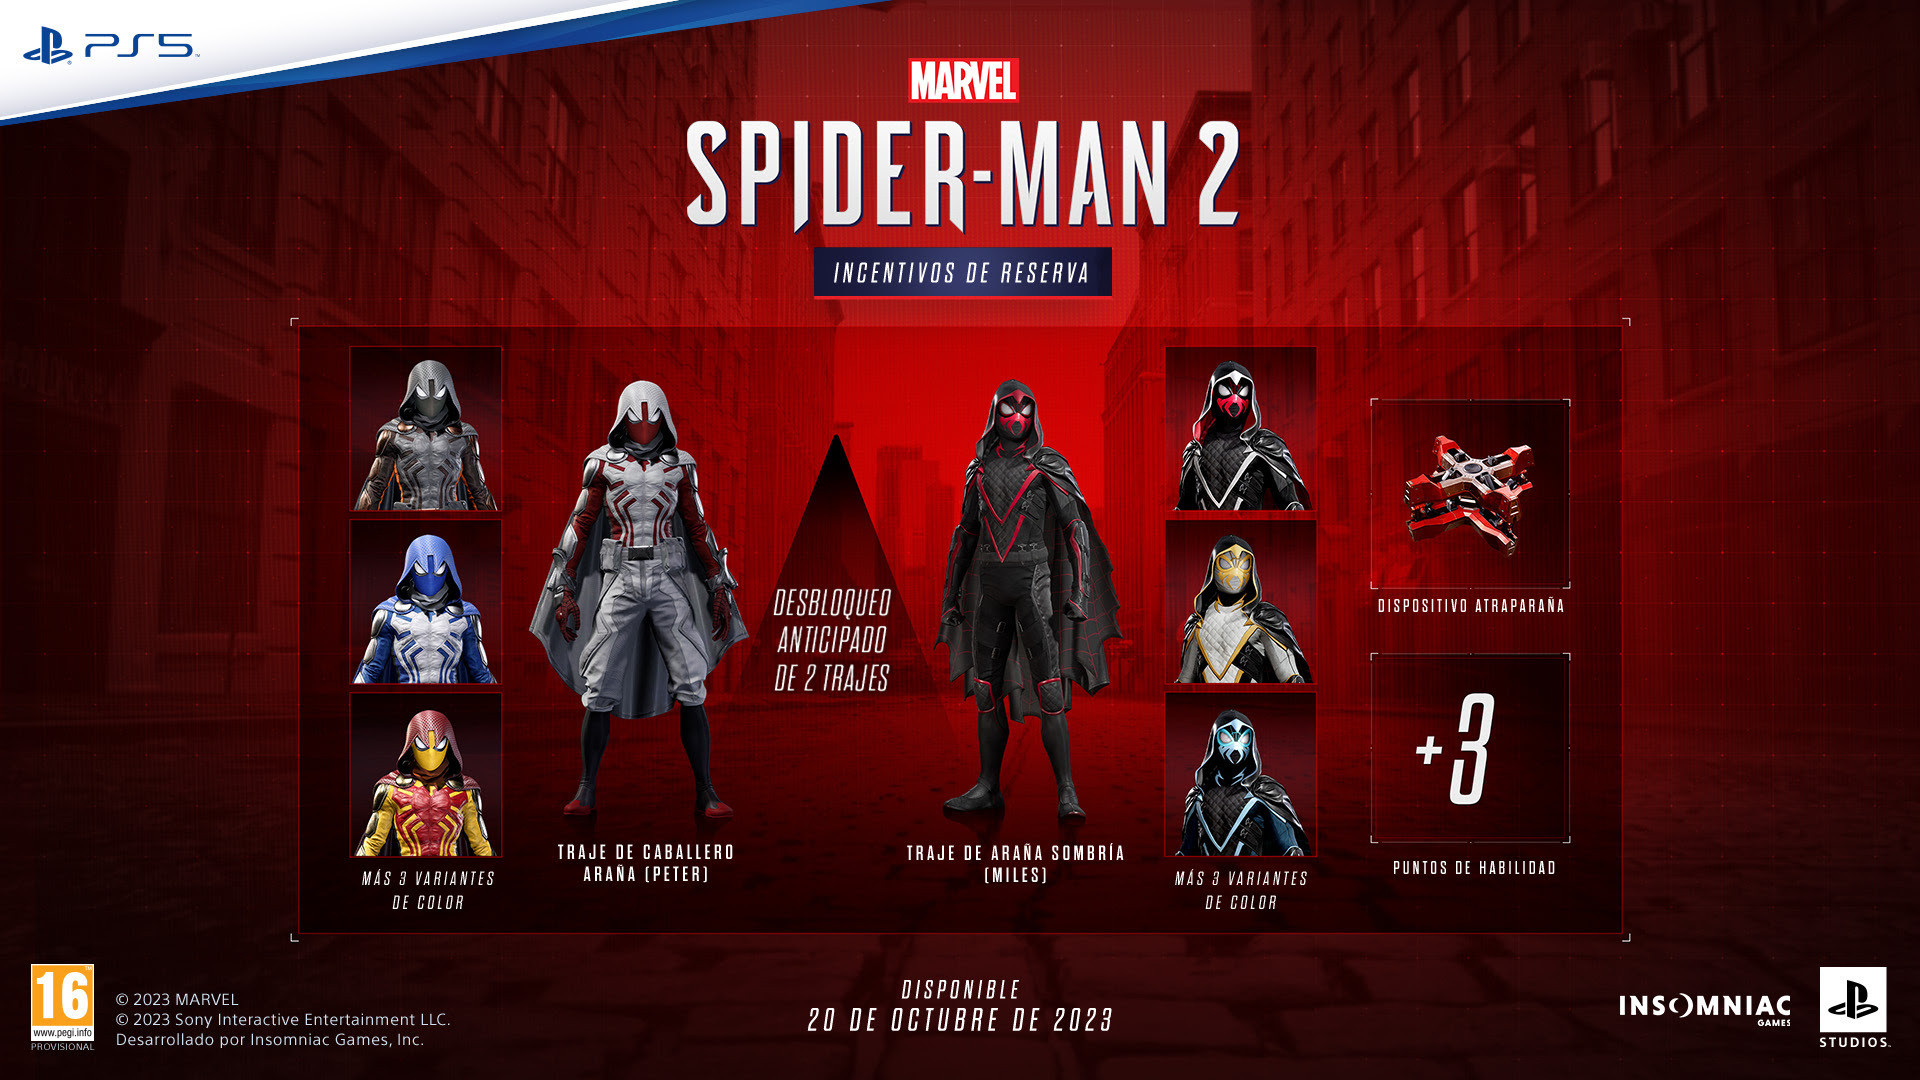 Marvel's Spider-Man 2: así son sus brutales ediciones Deluxe y Coleccionista. PlayStation.